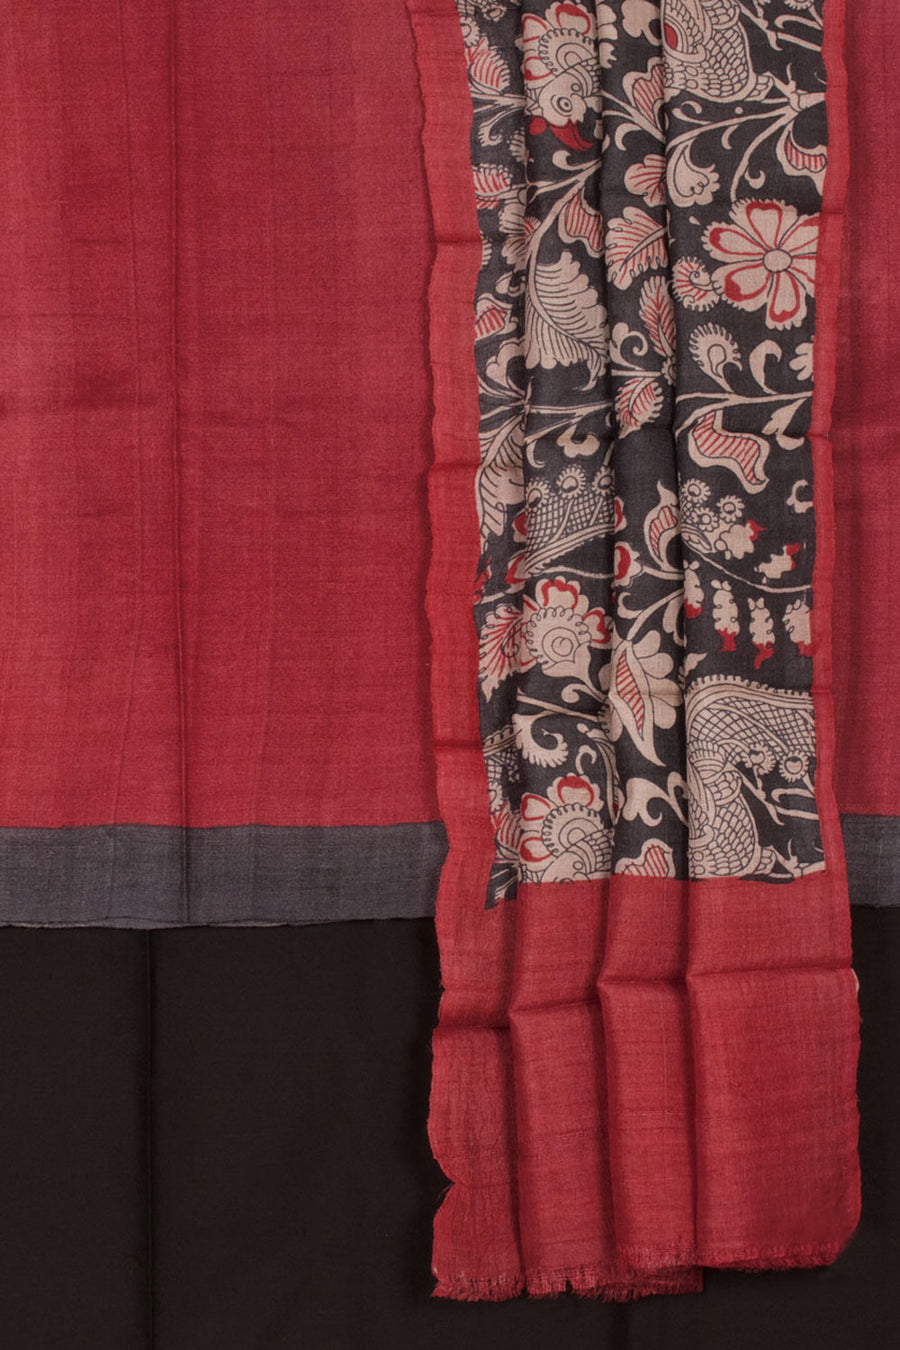 Hand Block Printed Tussar Silk 3-Piece Salwar Suit Material with Floral, Bird Design Dupatta